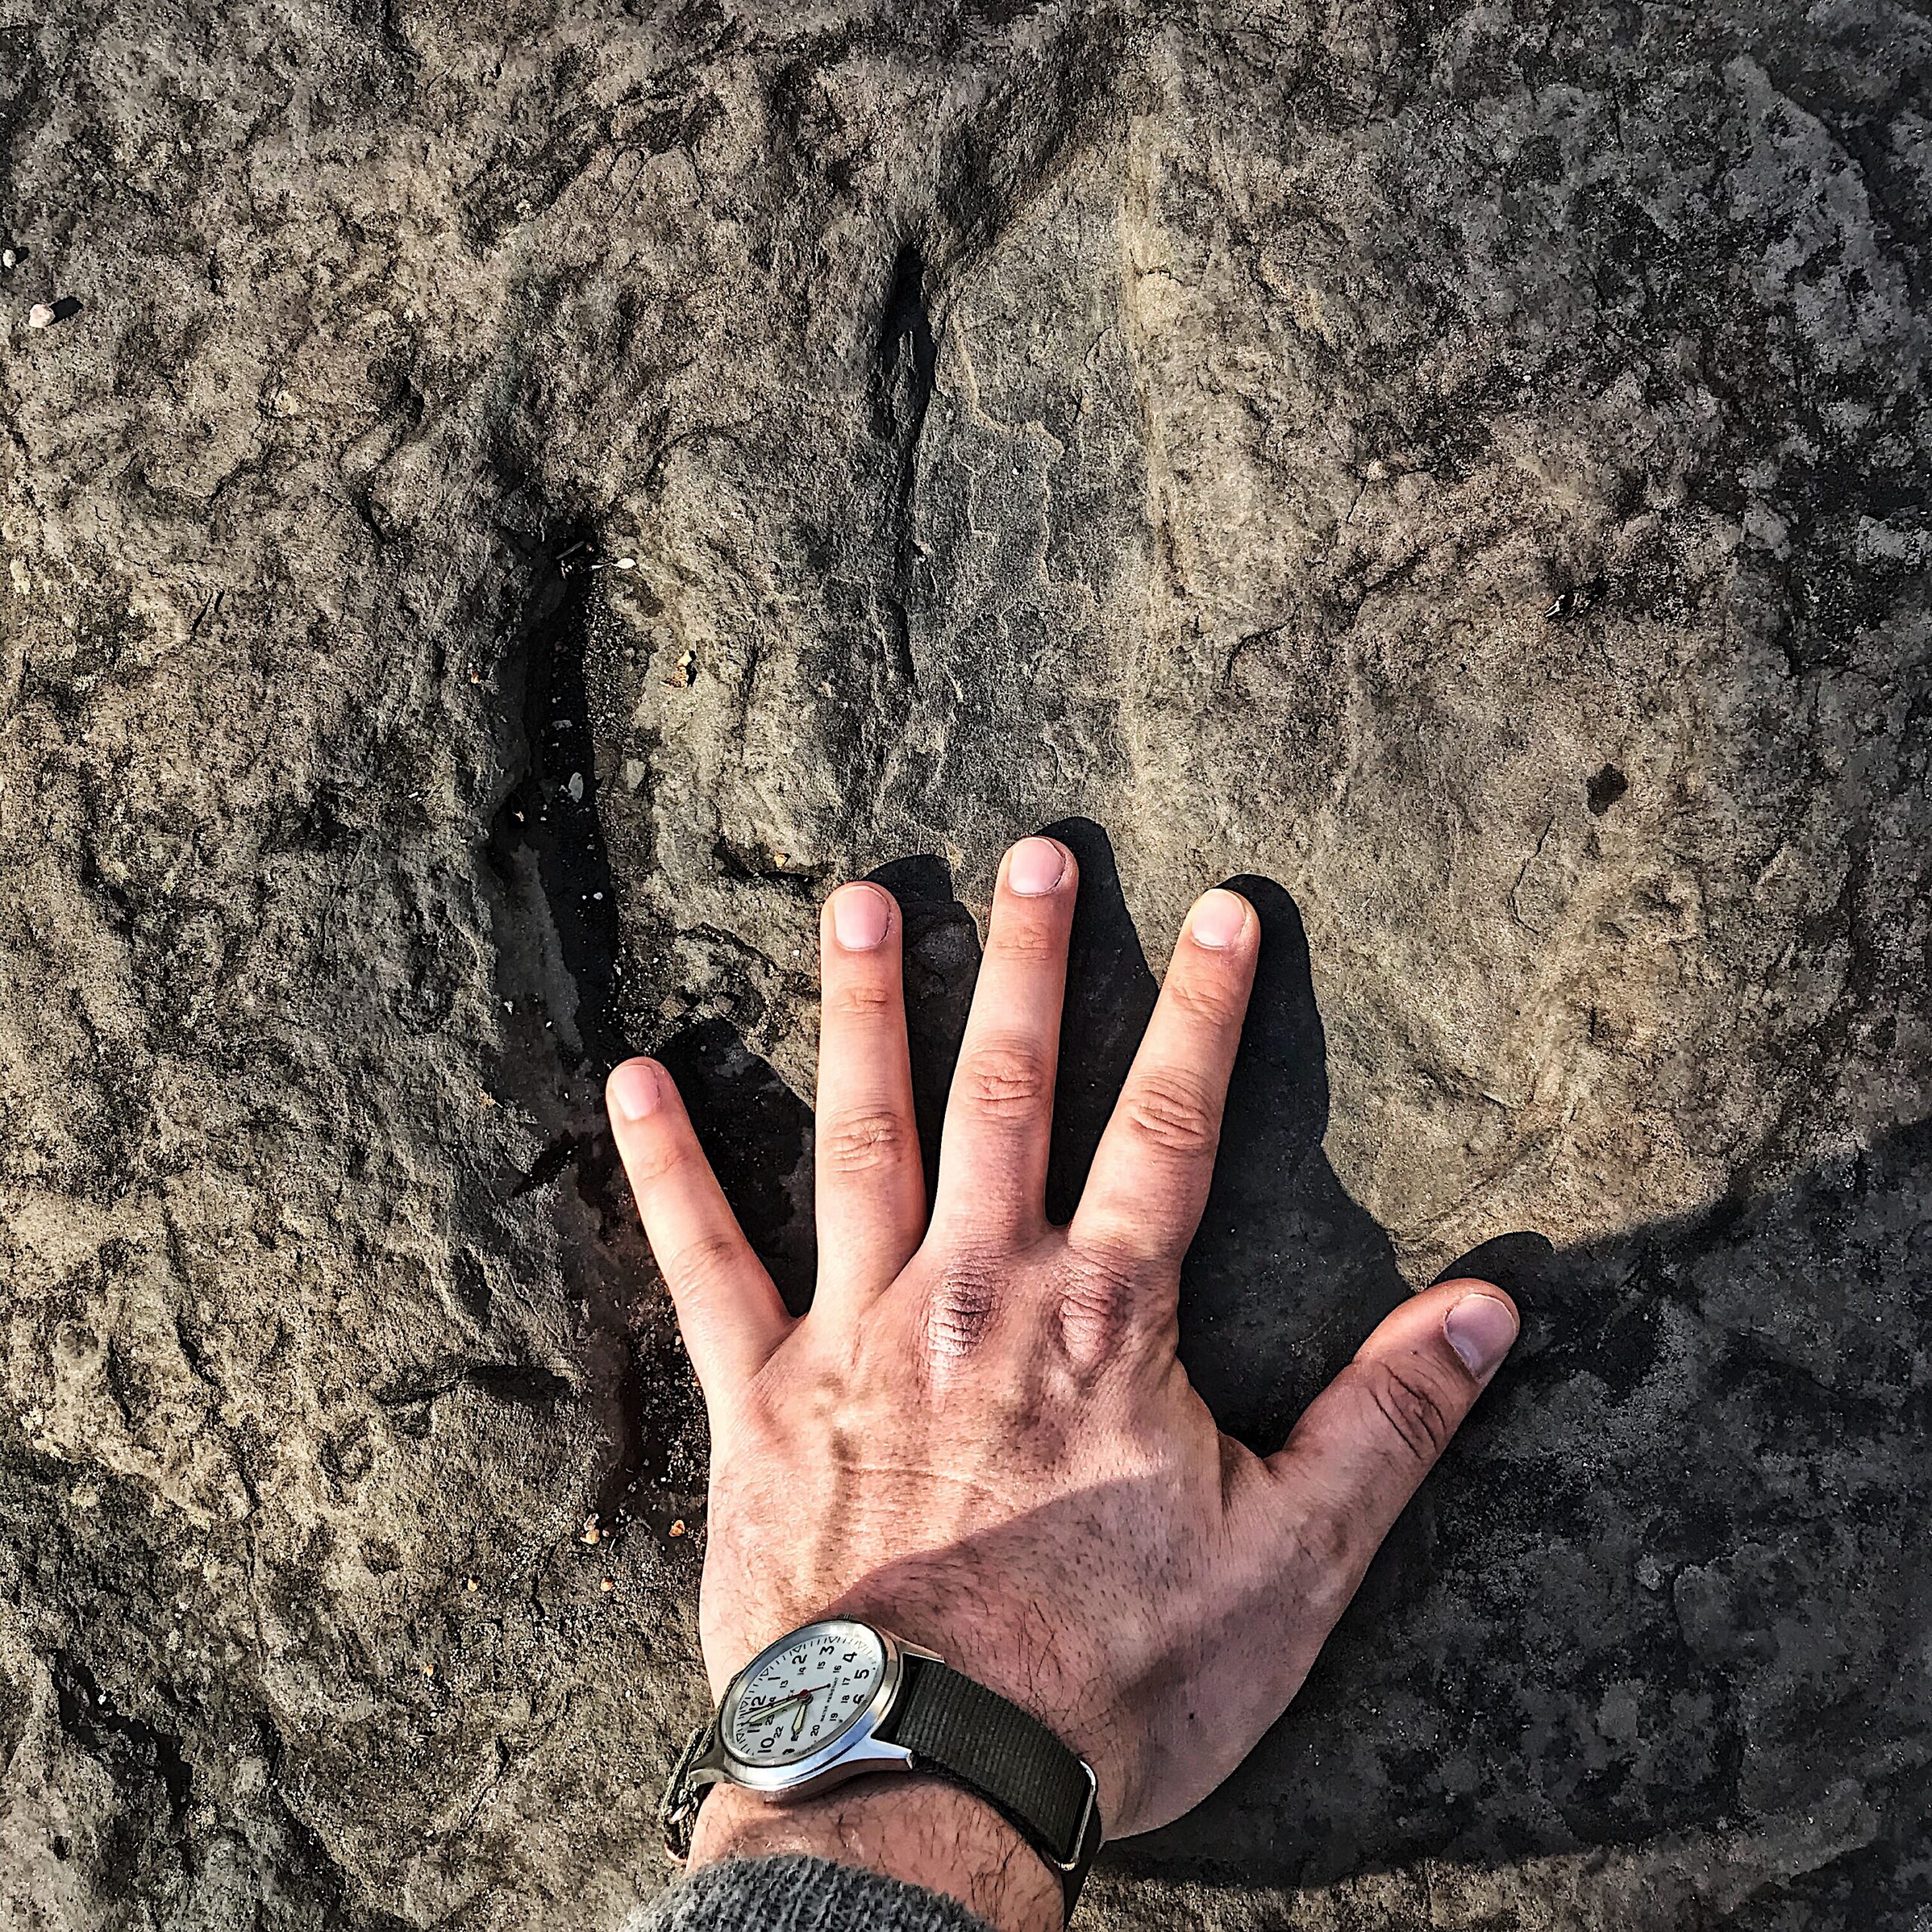 A man's hand inside a dinosaur footprint